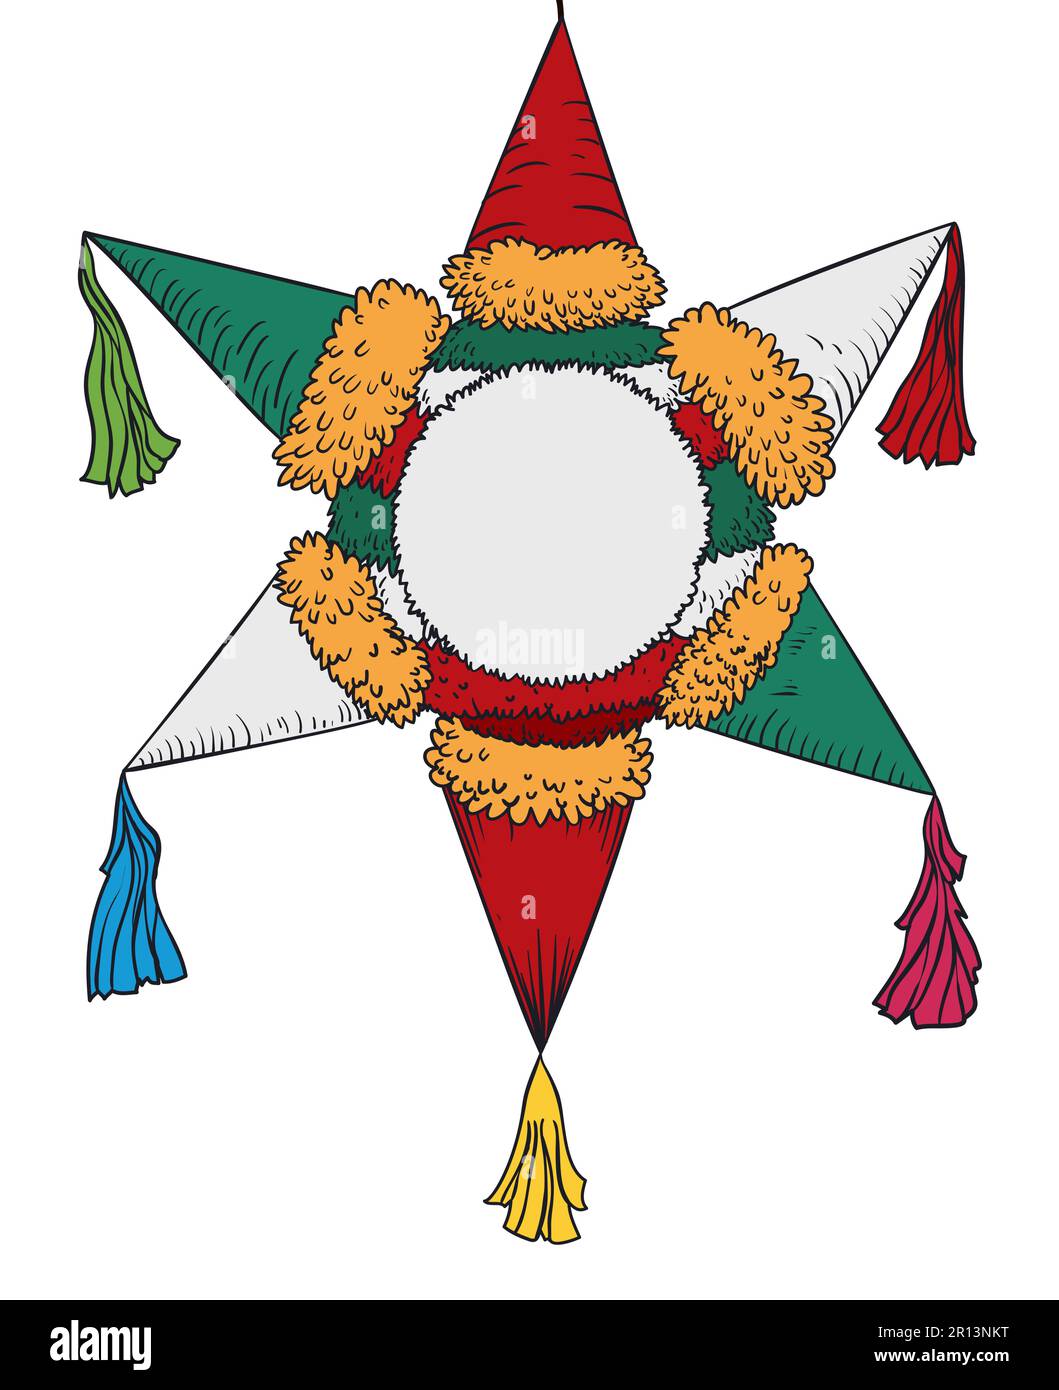 Pinata isolata con tradizionale forma a stella e colori messicani in stile disegnato a mano e colori piatti. Illustrazione Vettoriale